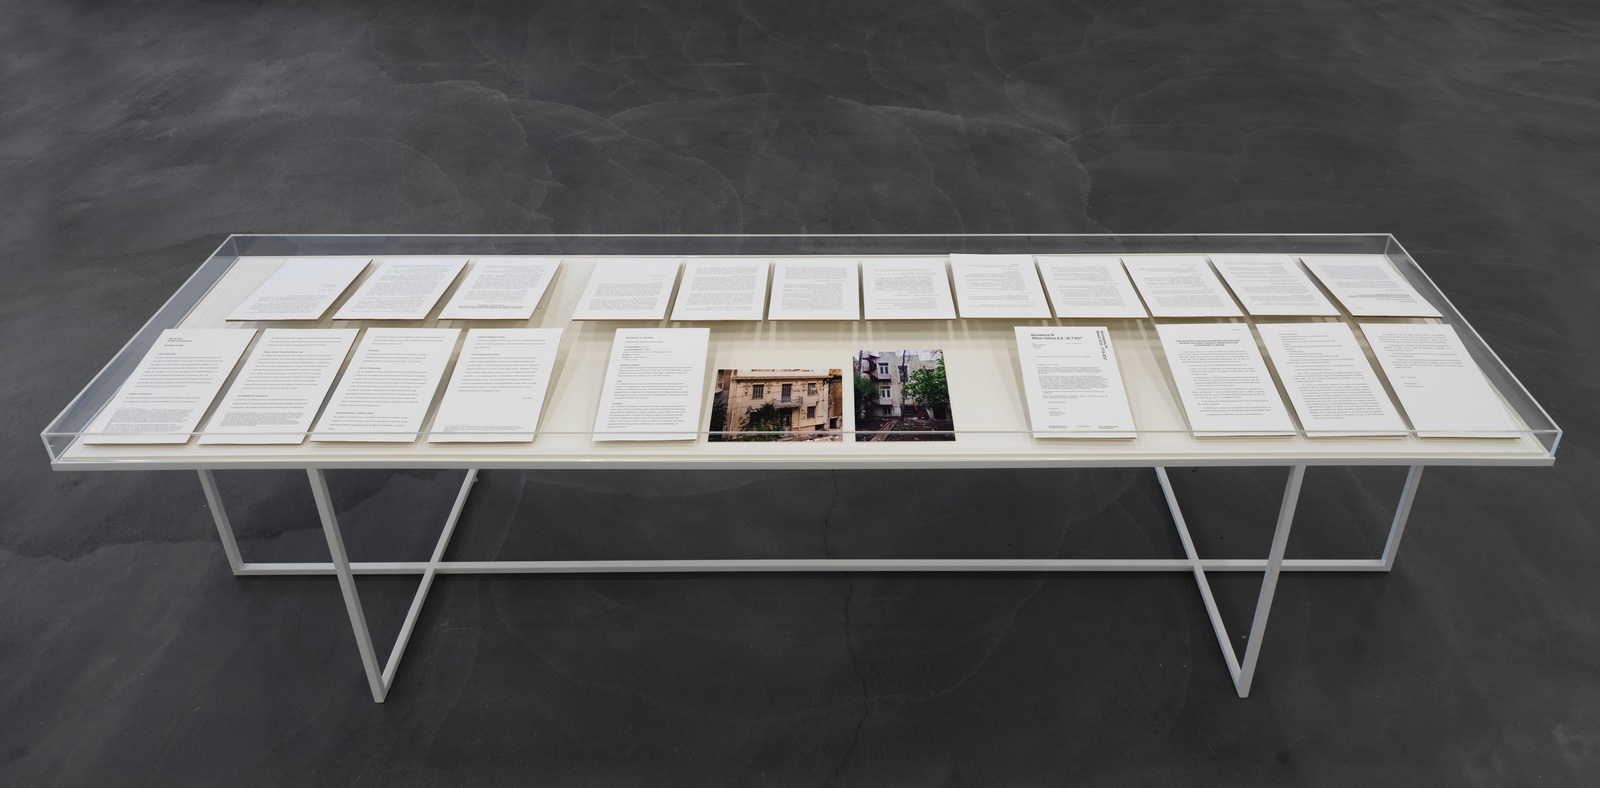 Maria Eichhorn, Zwölf Arbeiten / Twelve Works (1988–2018), exhibition view